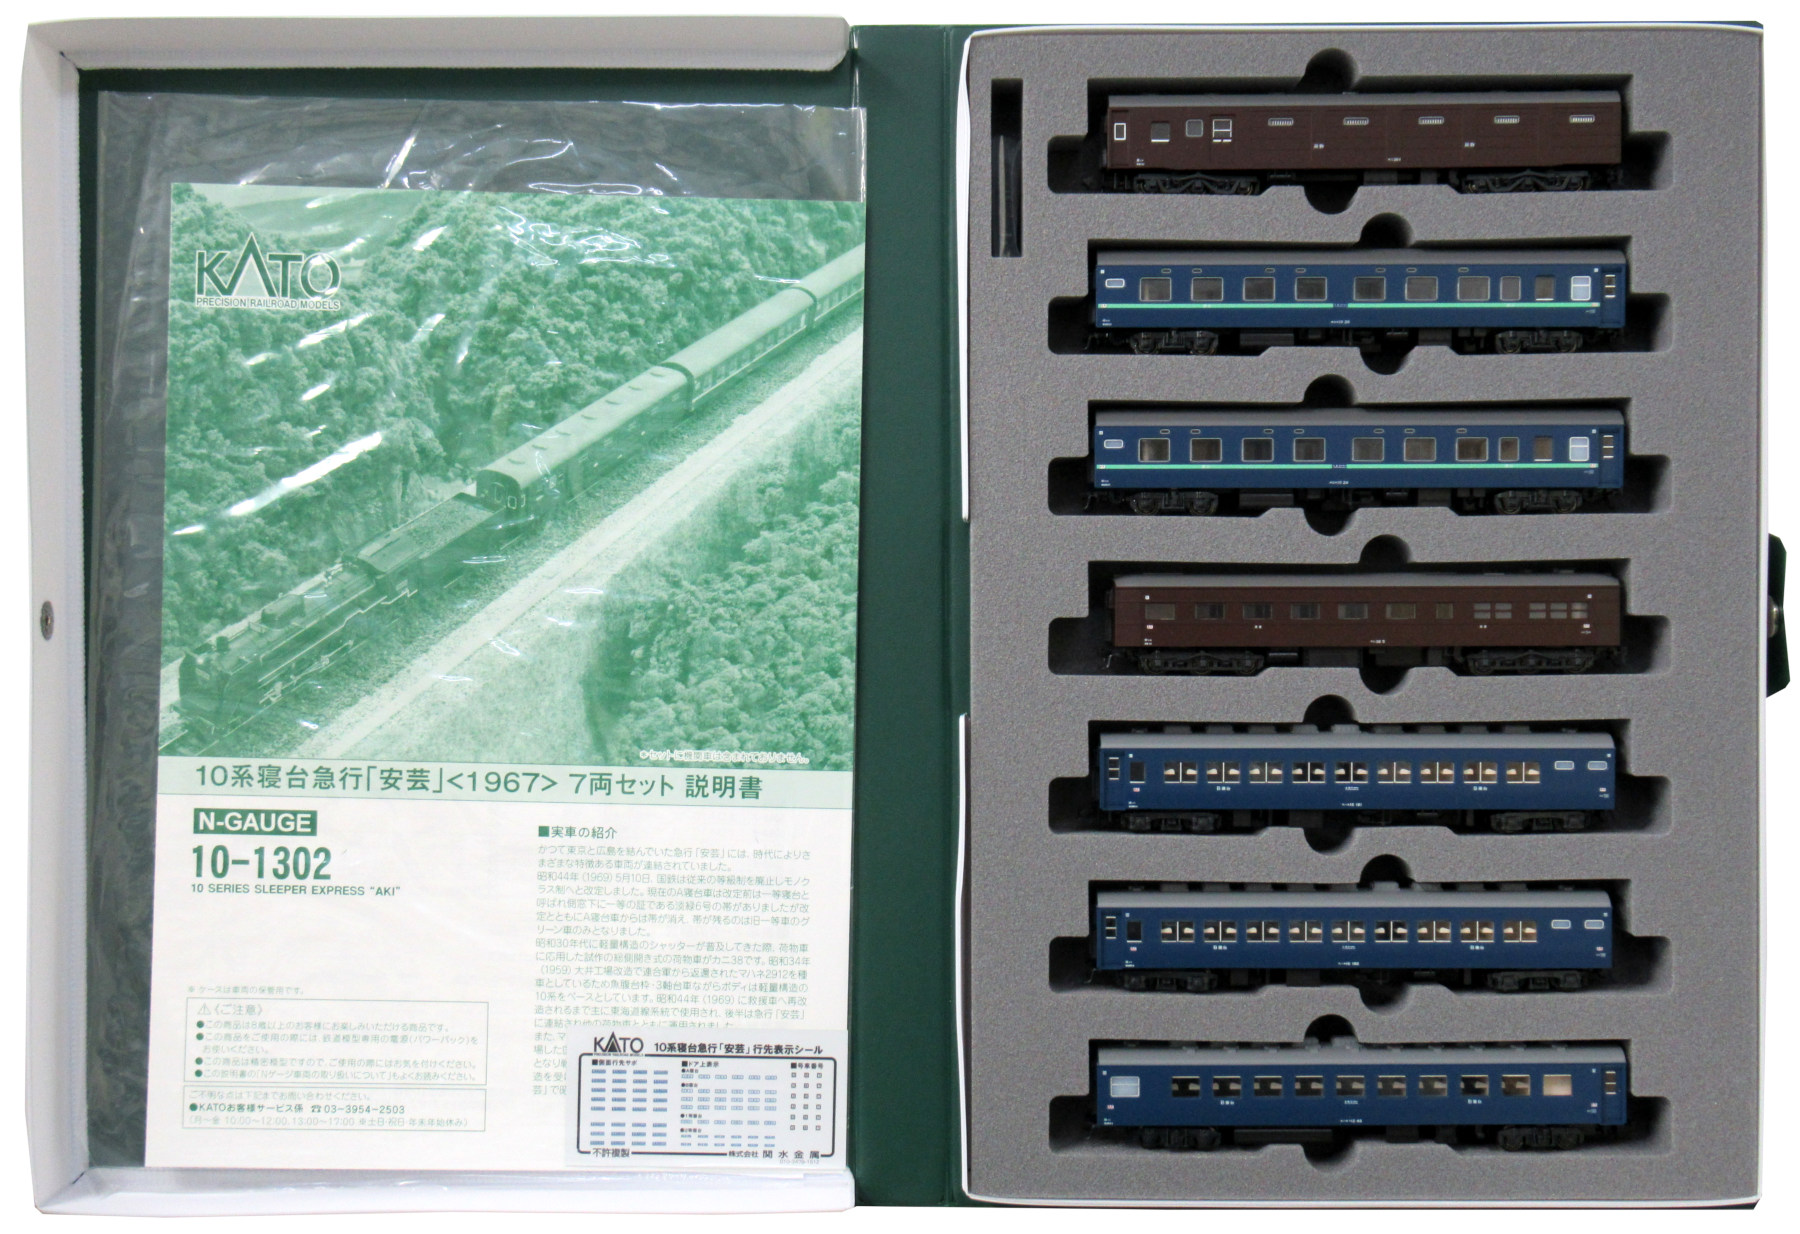 公式]鉄道模型(10-130210系寝台急行「安芸」(1967) 7両セット)商品詳細 